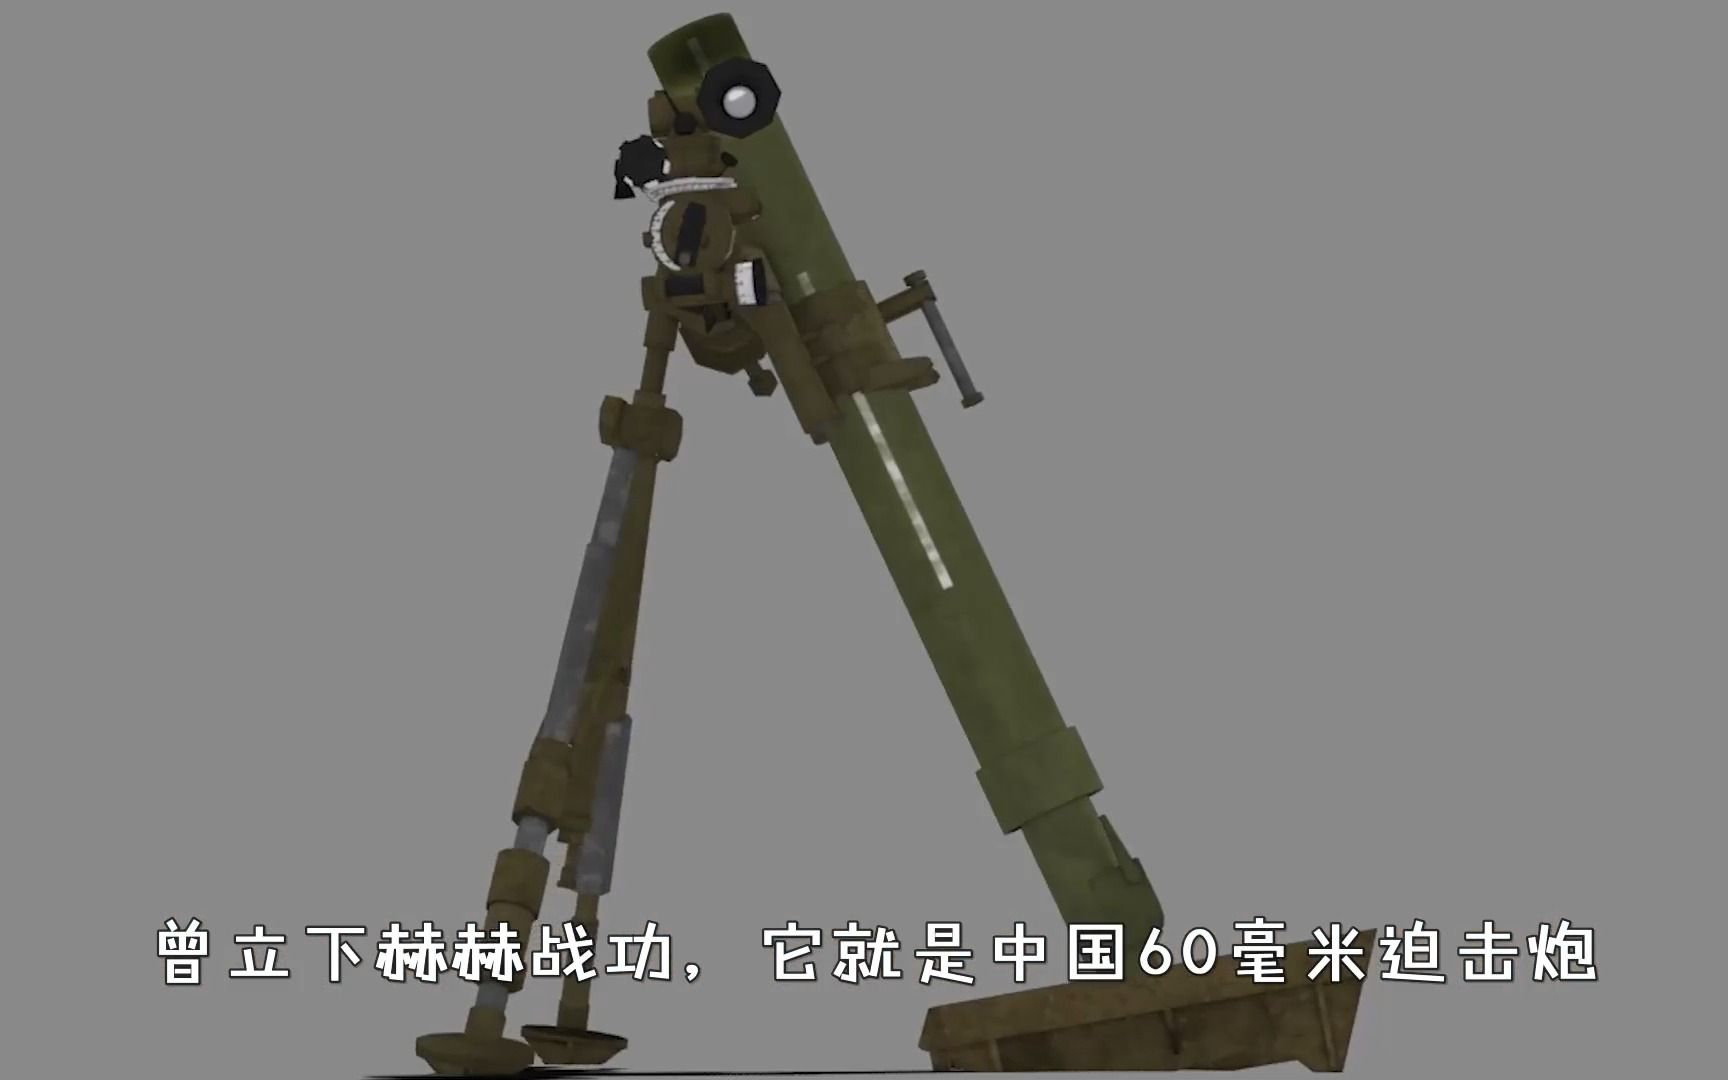 中国60毫米迫击炮的不老传奇,超世界同类武器水平,立下赫赫战功